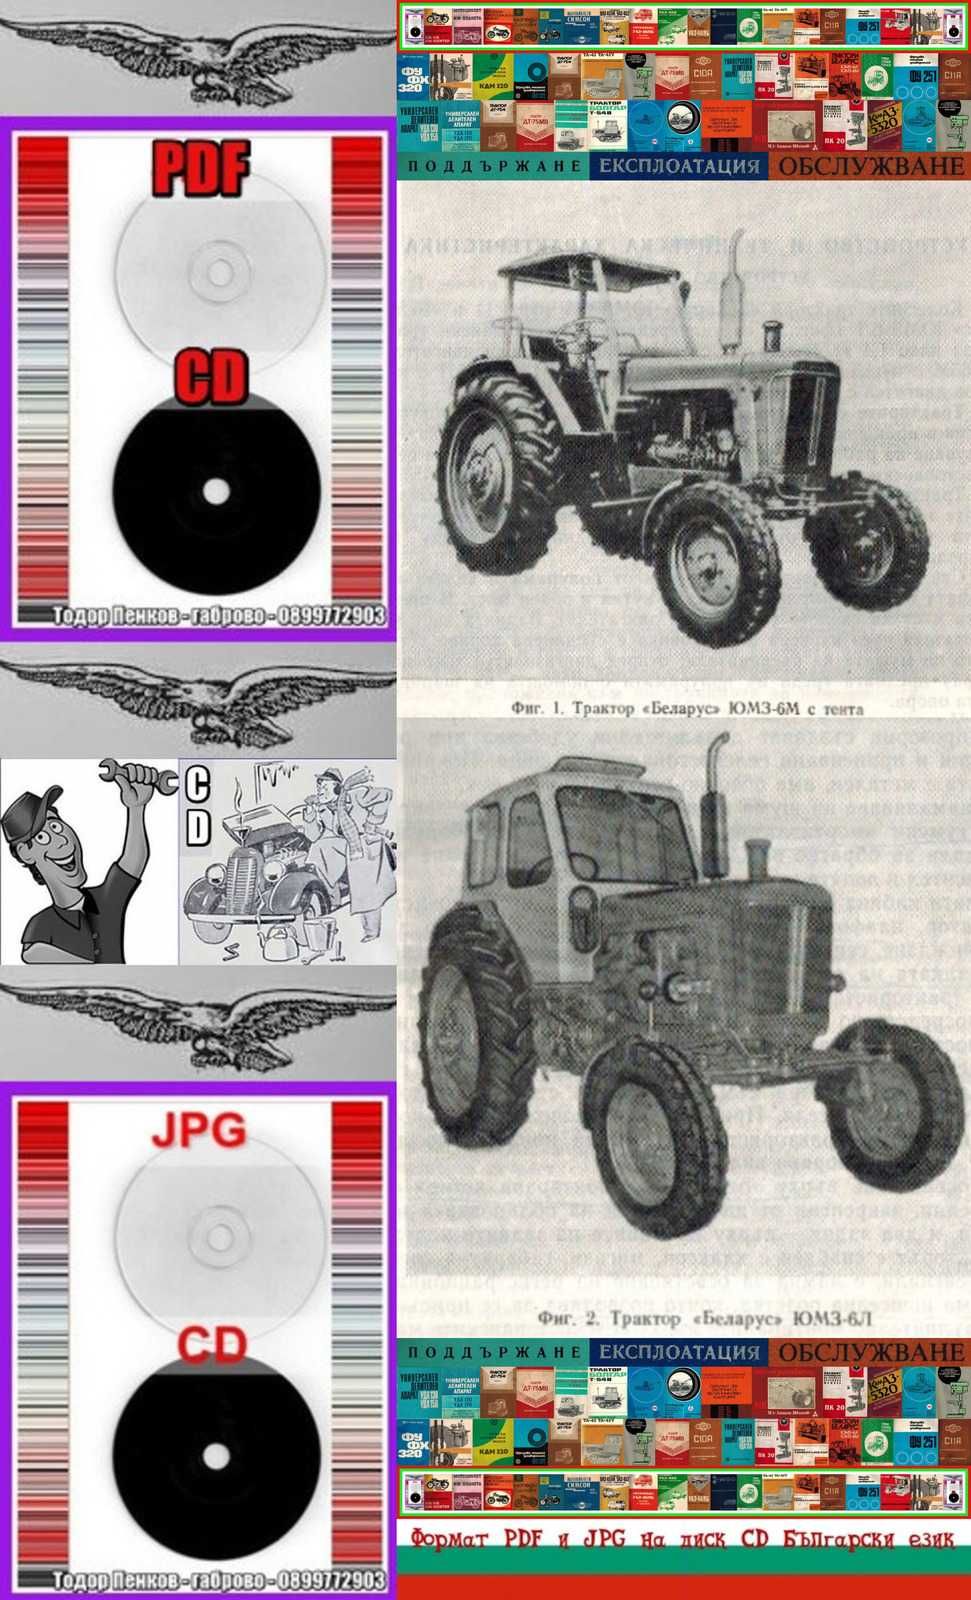 Трактори ”БЕЛАРУС”ЮМЗ-6М/6Л обслужване на диск CD Български език